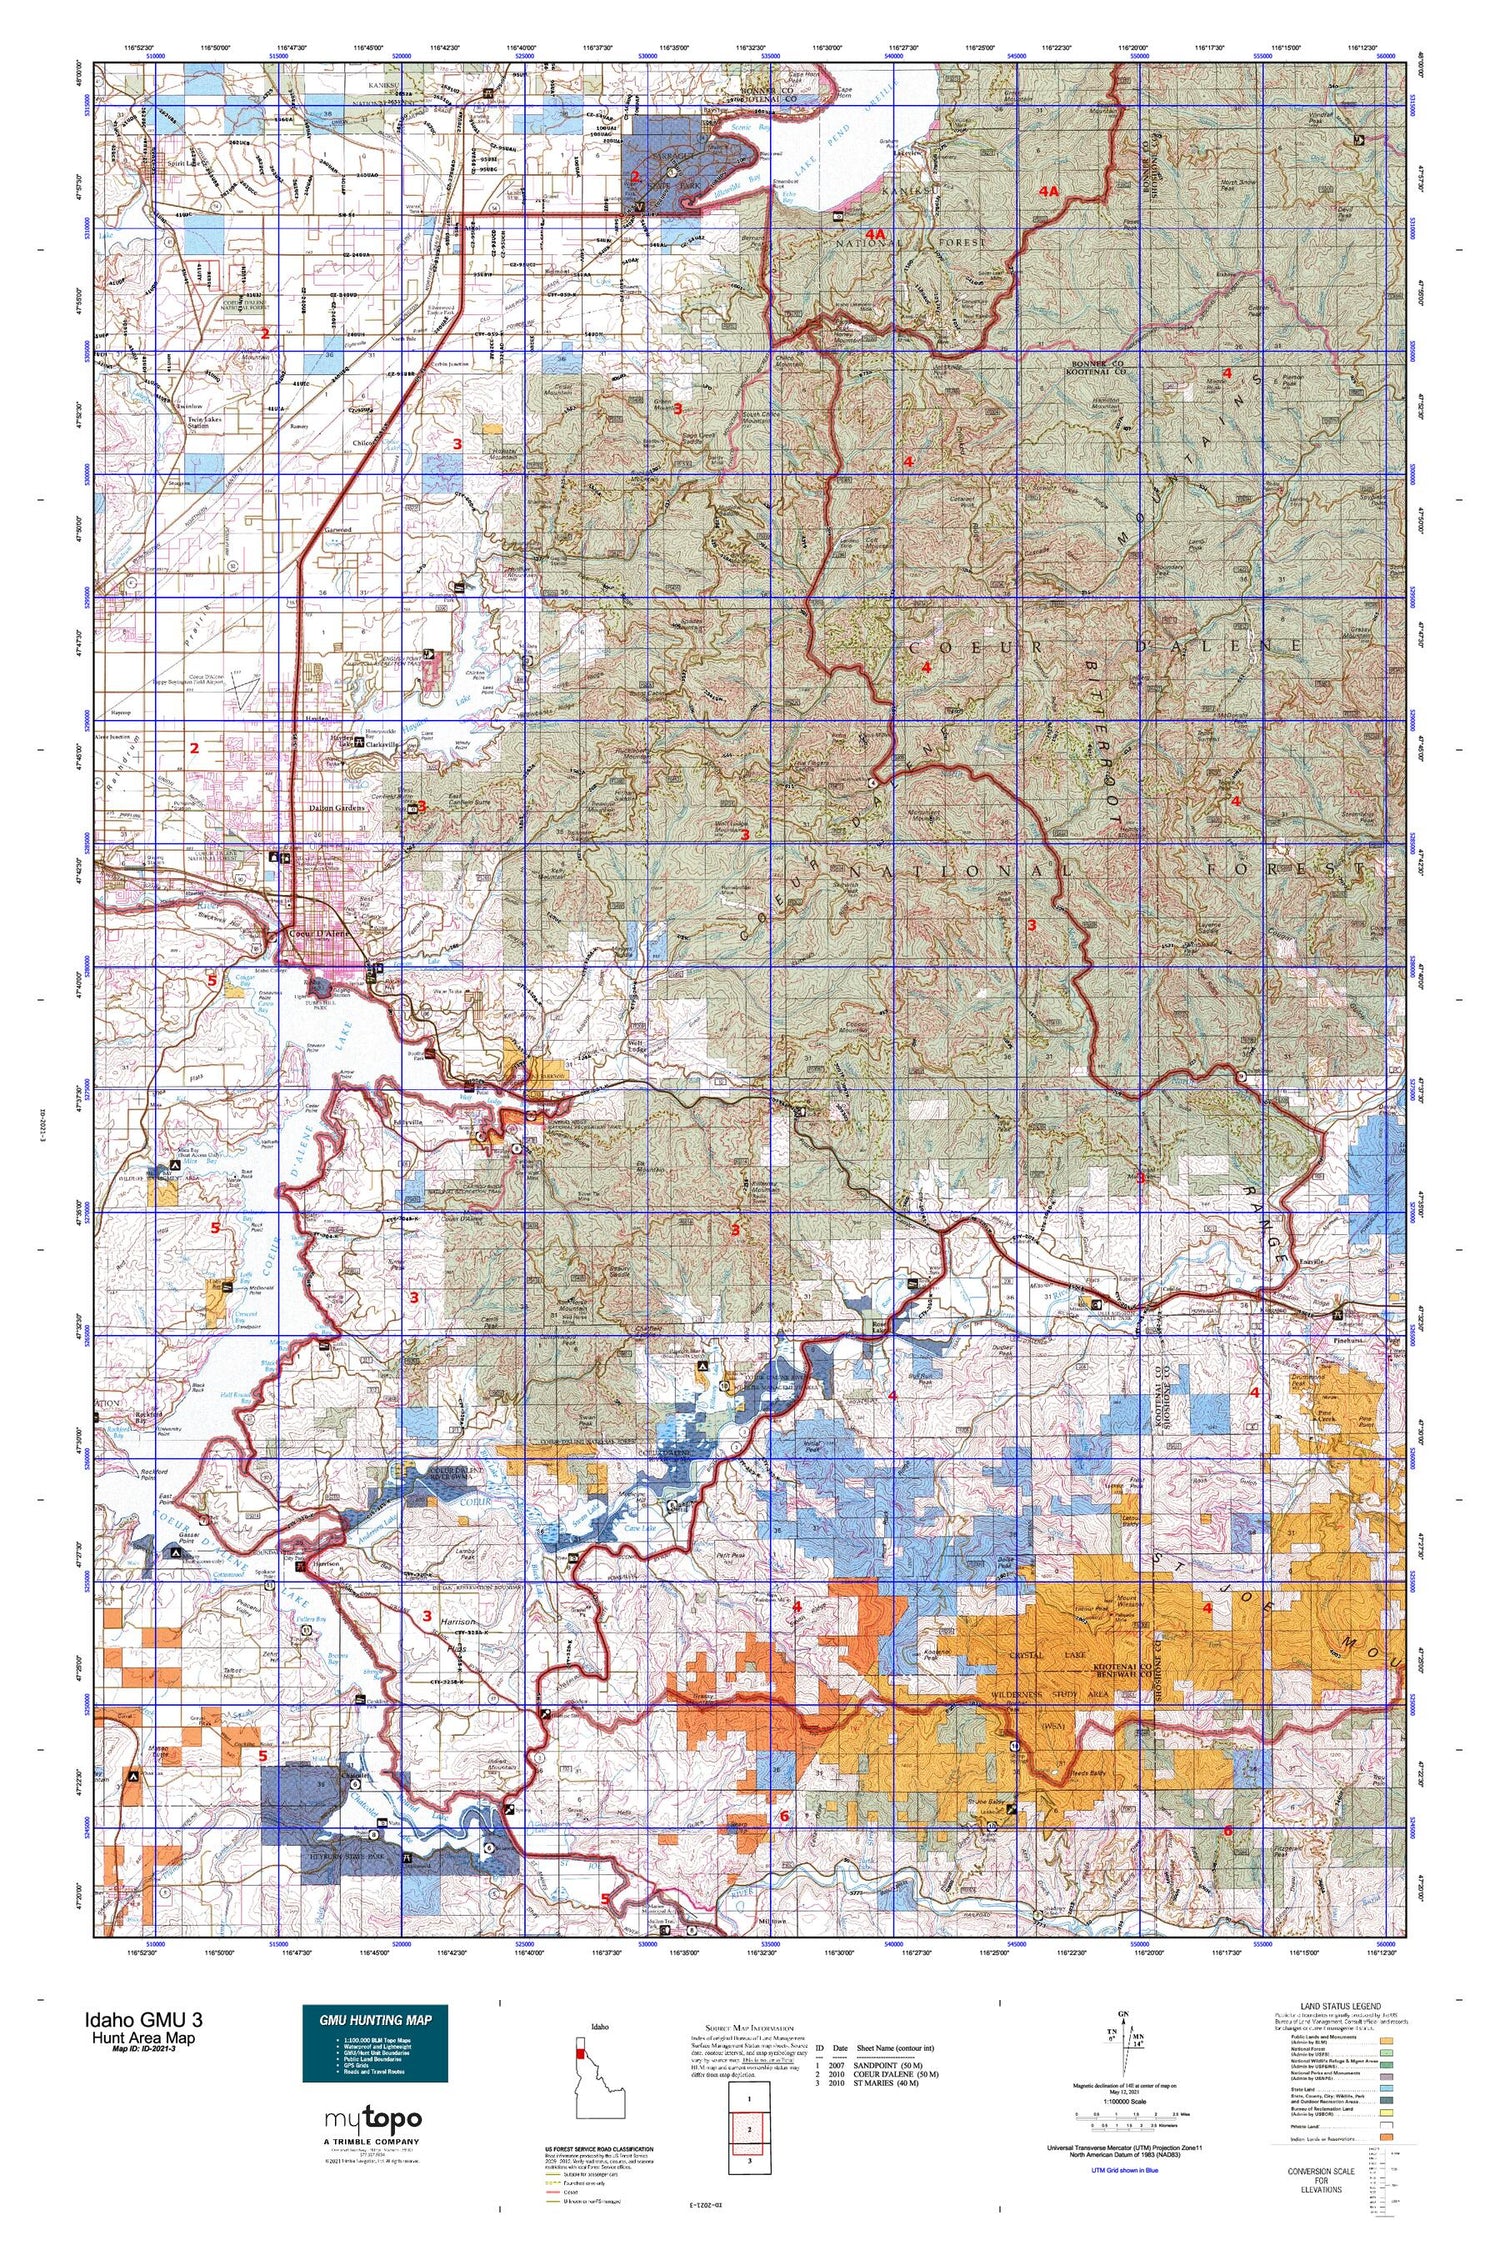 Idaho GMU 3 Map Image